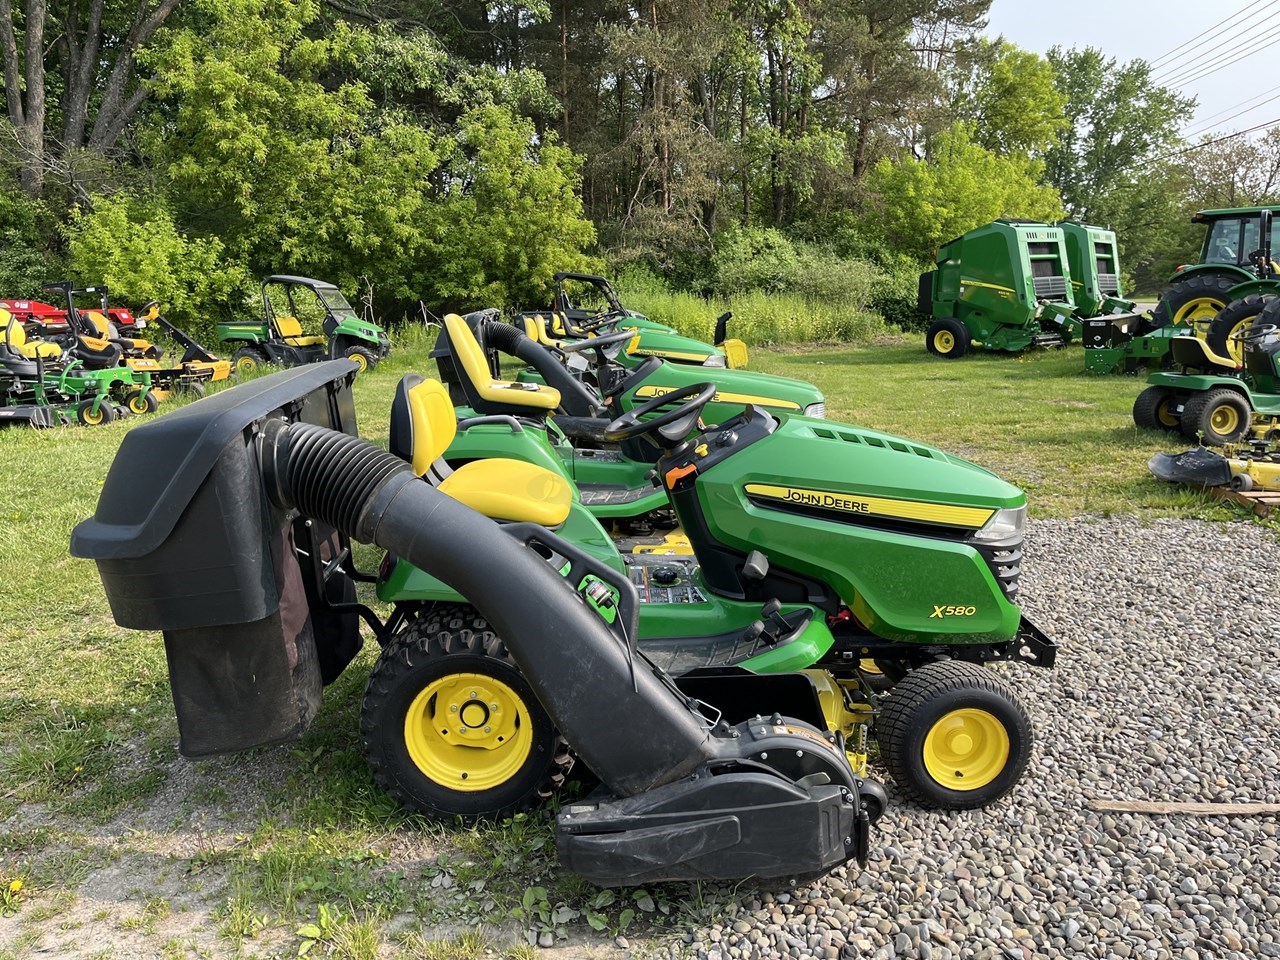 2019 John Deere X580 Lawn Mower For Sale